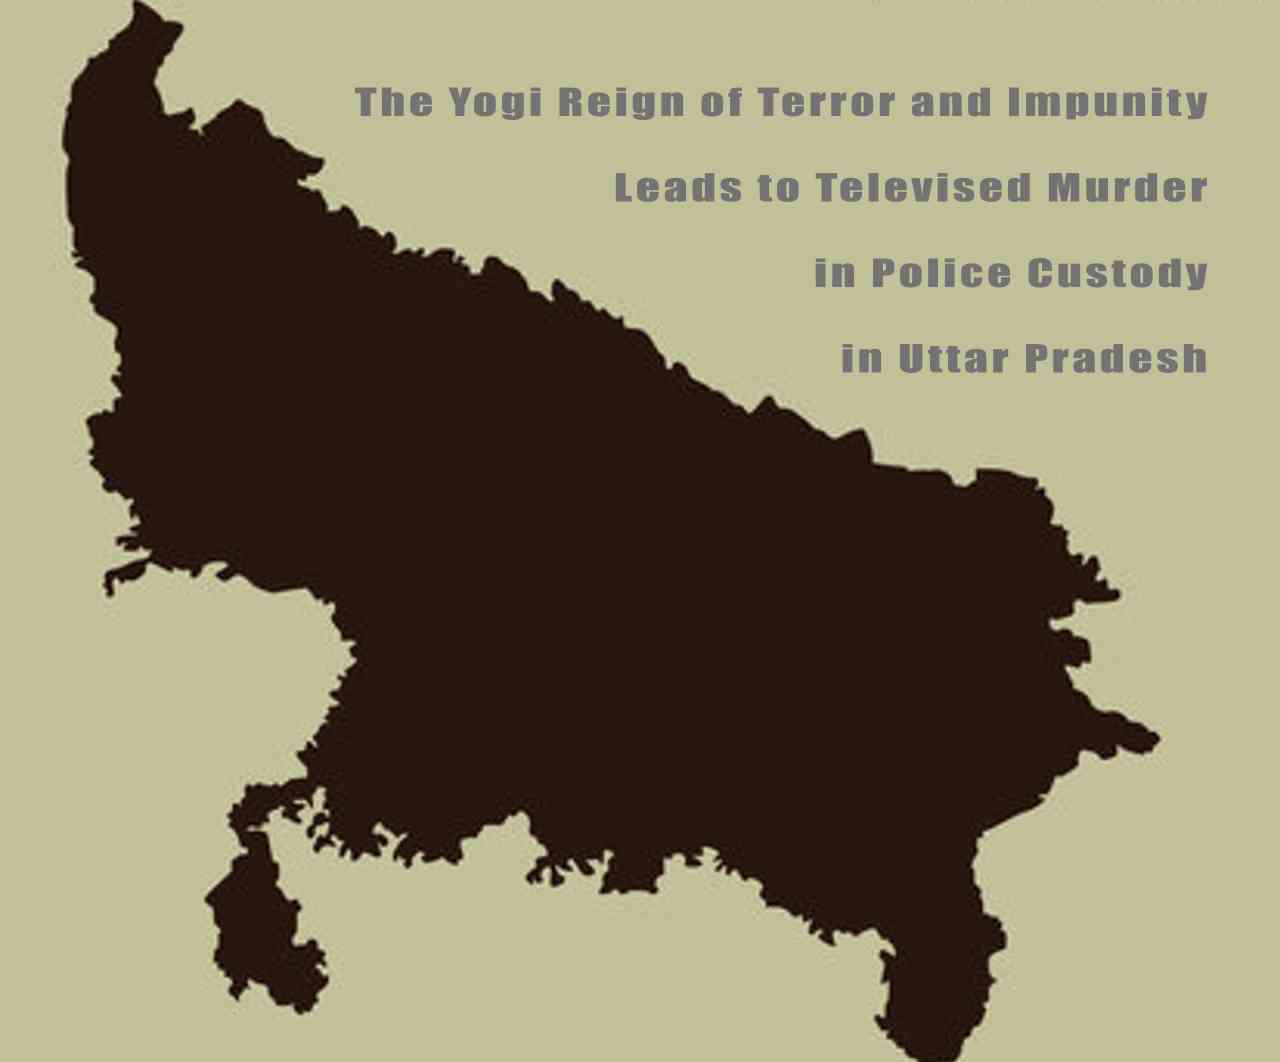 Televised Murder in Police Custody in Uttar Pradesh